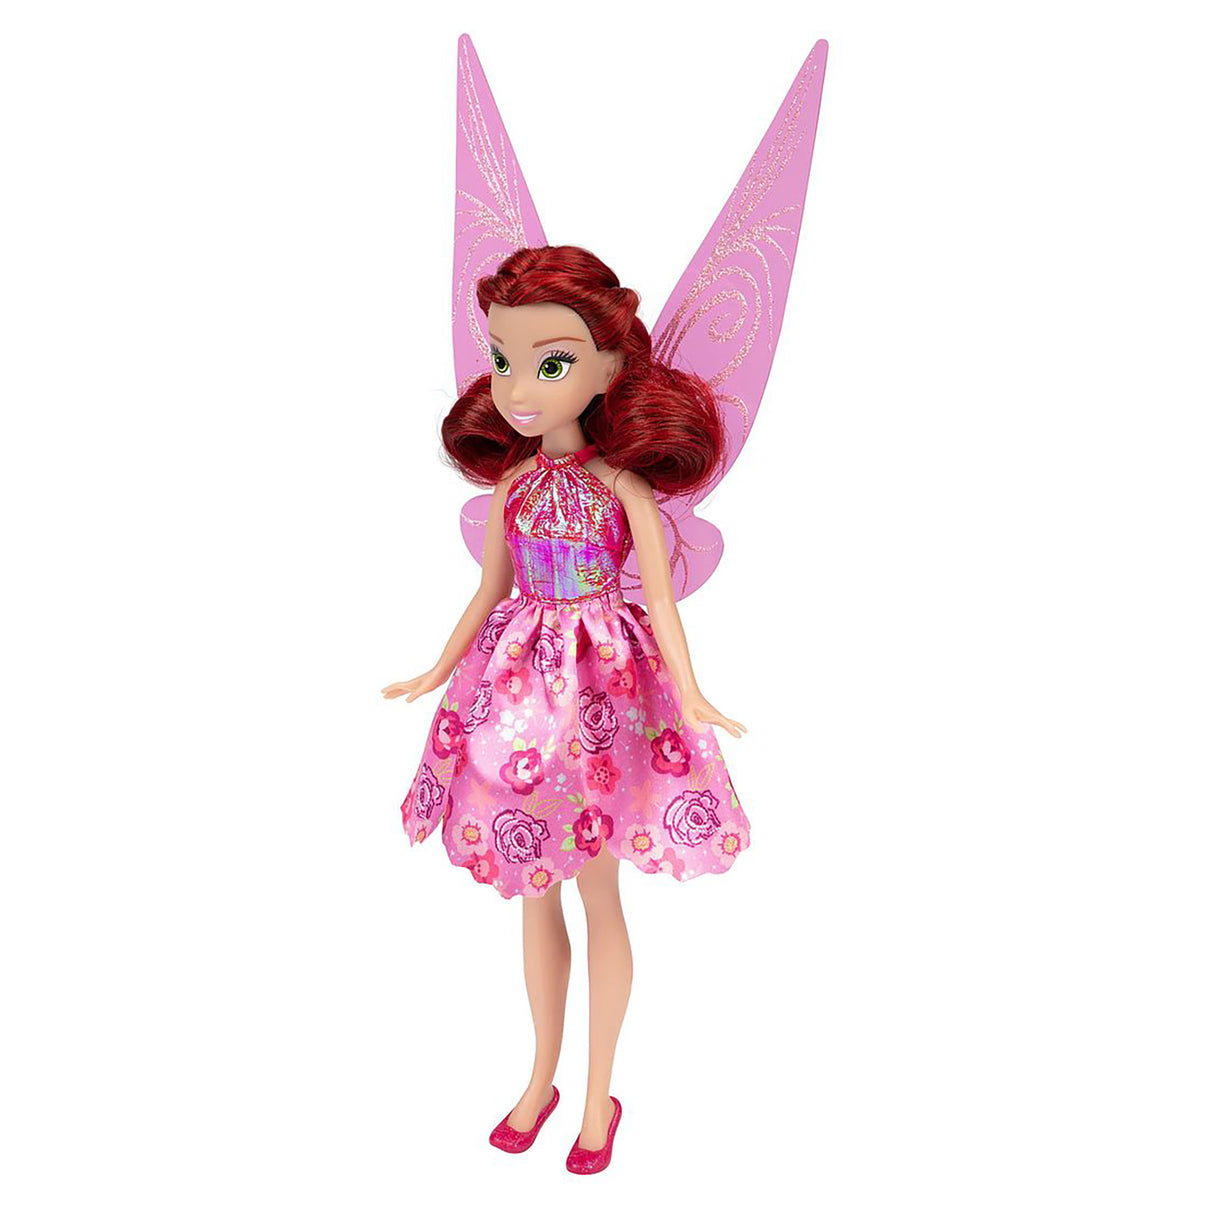 Disney Fairies Fashion Doll - Rosetta (9 inches)